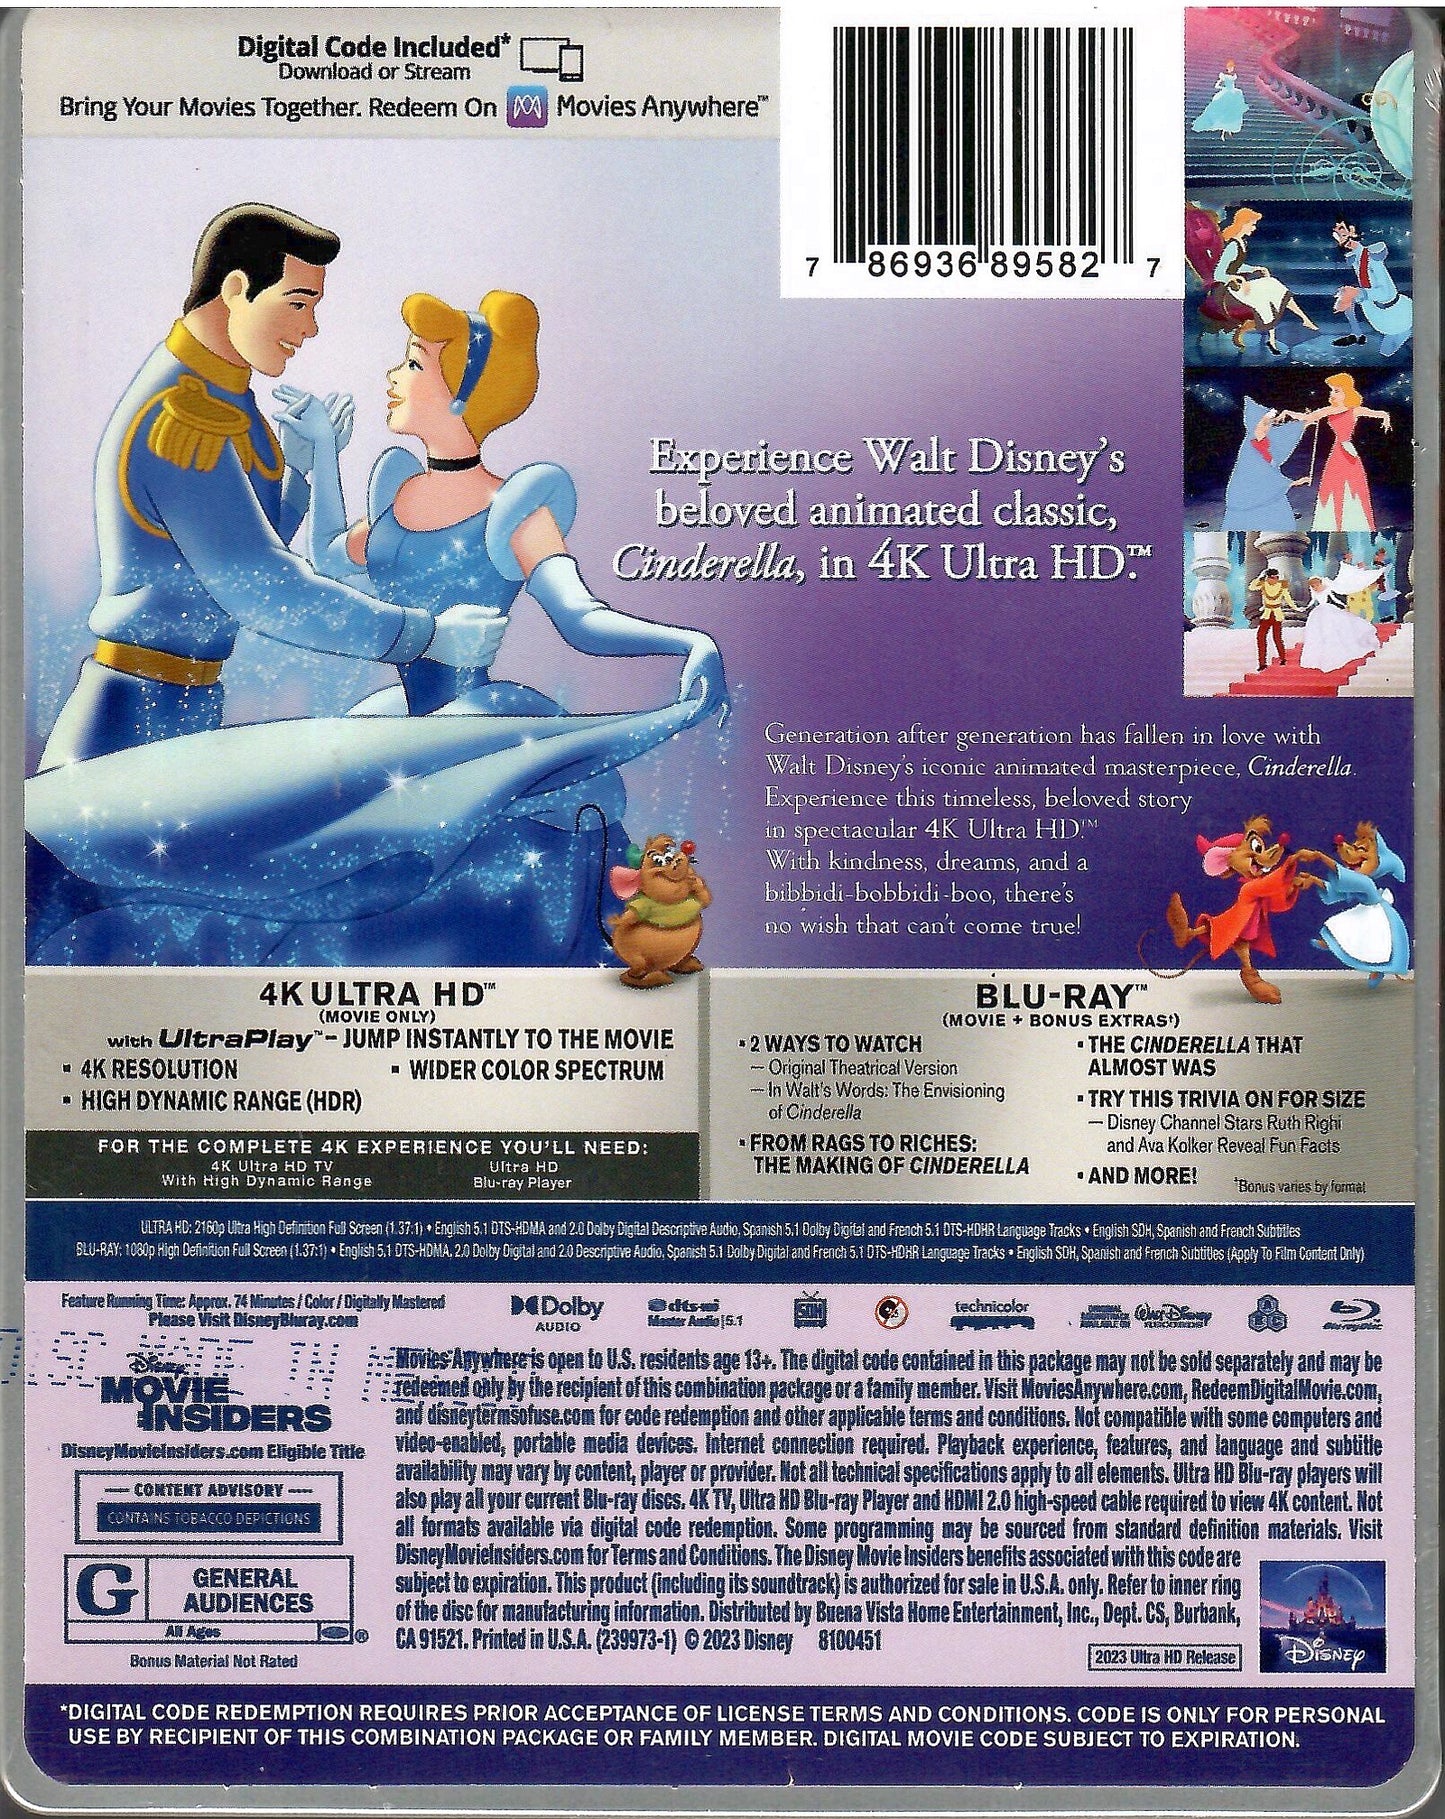 Cinderella 4K SteelBook: Disney 100th Anniversary Edition (1950)(Exclusive)